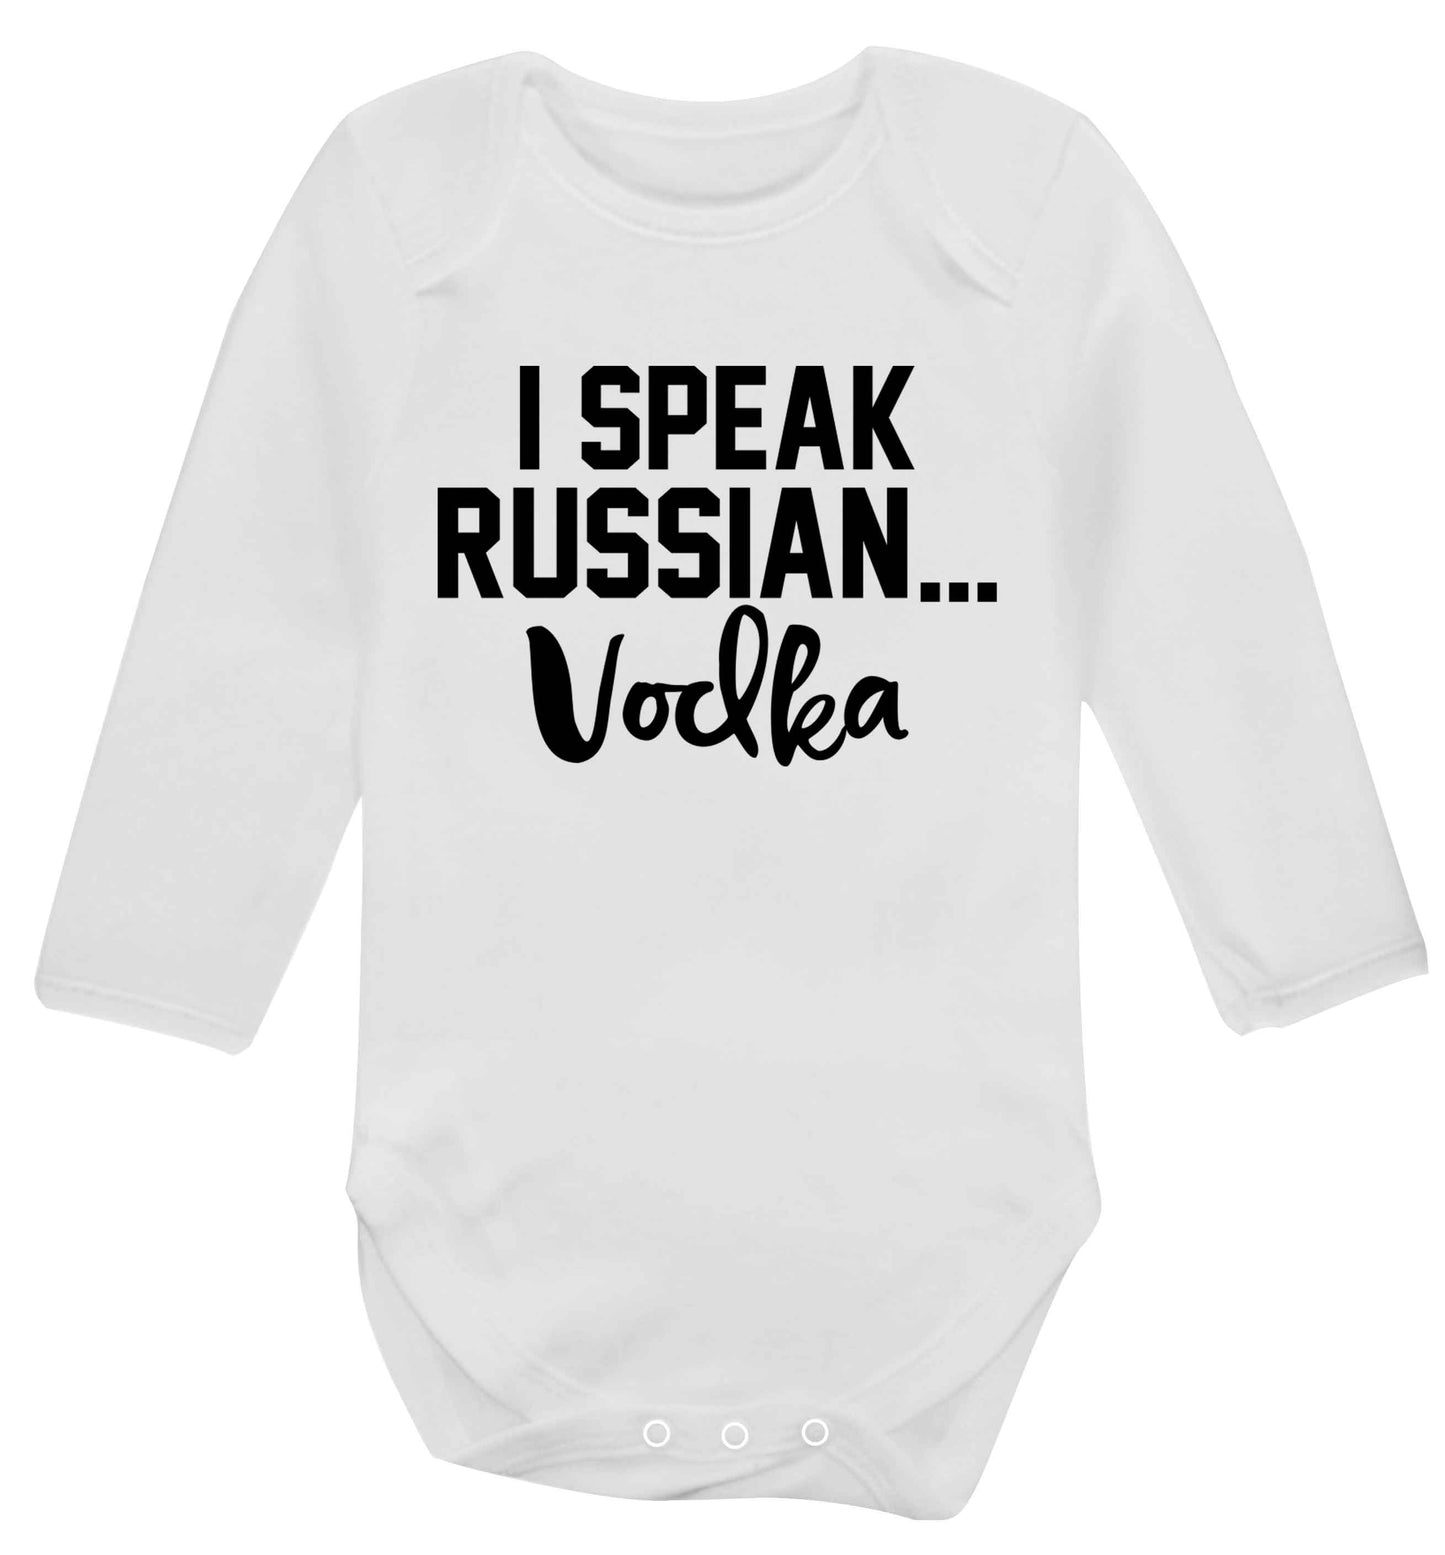 I speak russian...vodka Baby Vest long sleeved white 6-12 months